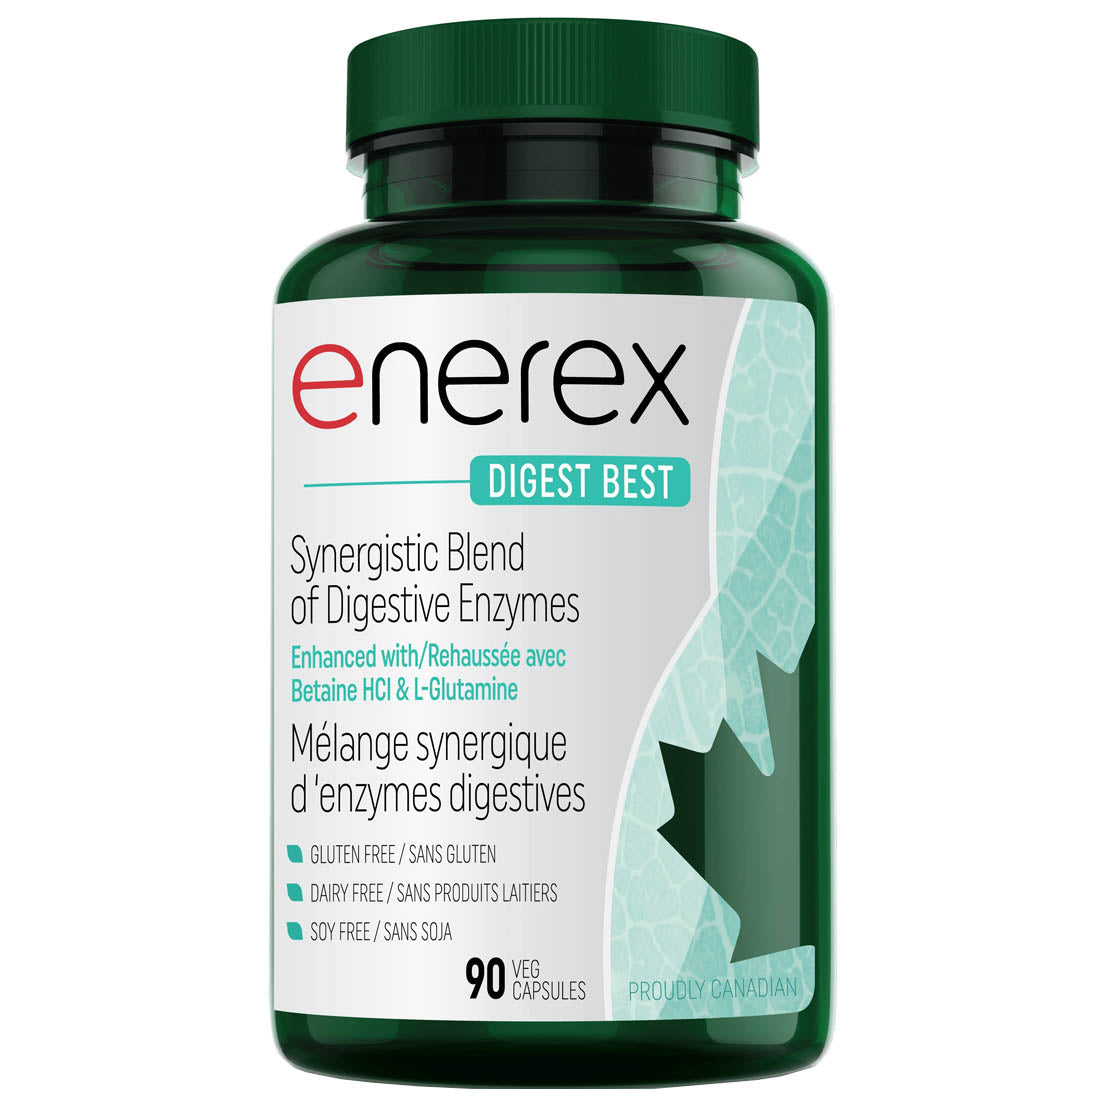 Enerex DIGEST BEST - Optimum Blend of Digestive Enzymes, 90 Capsules